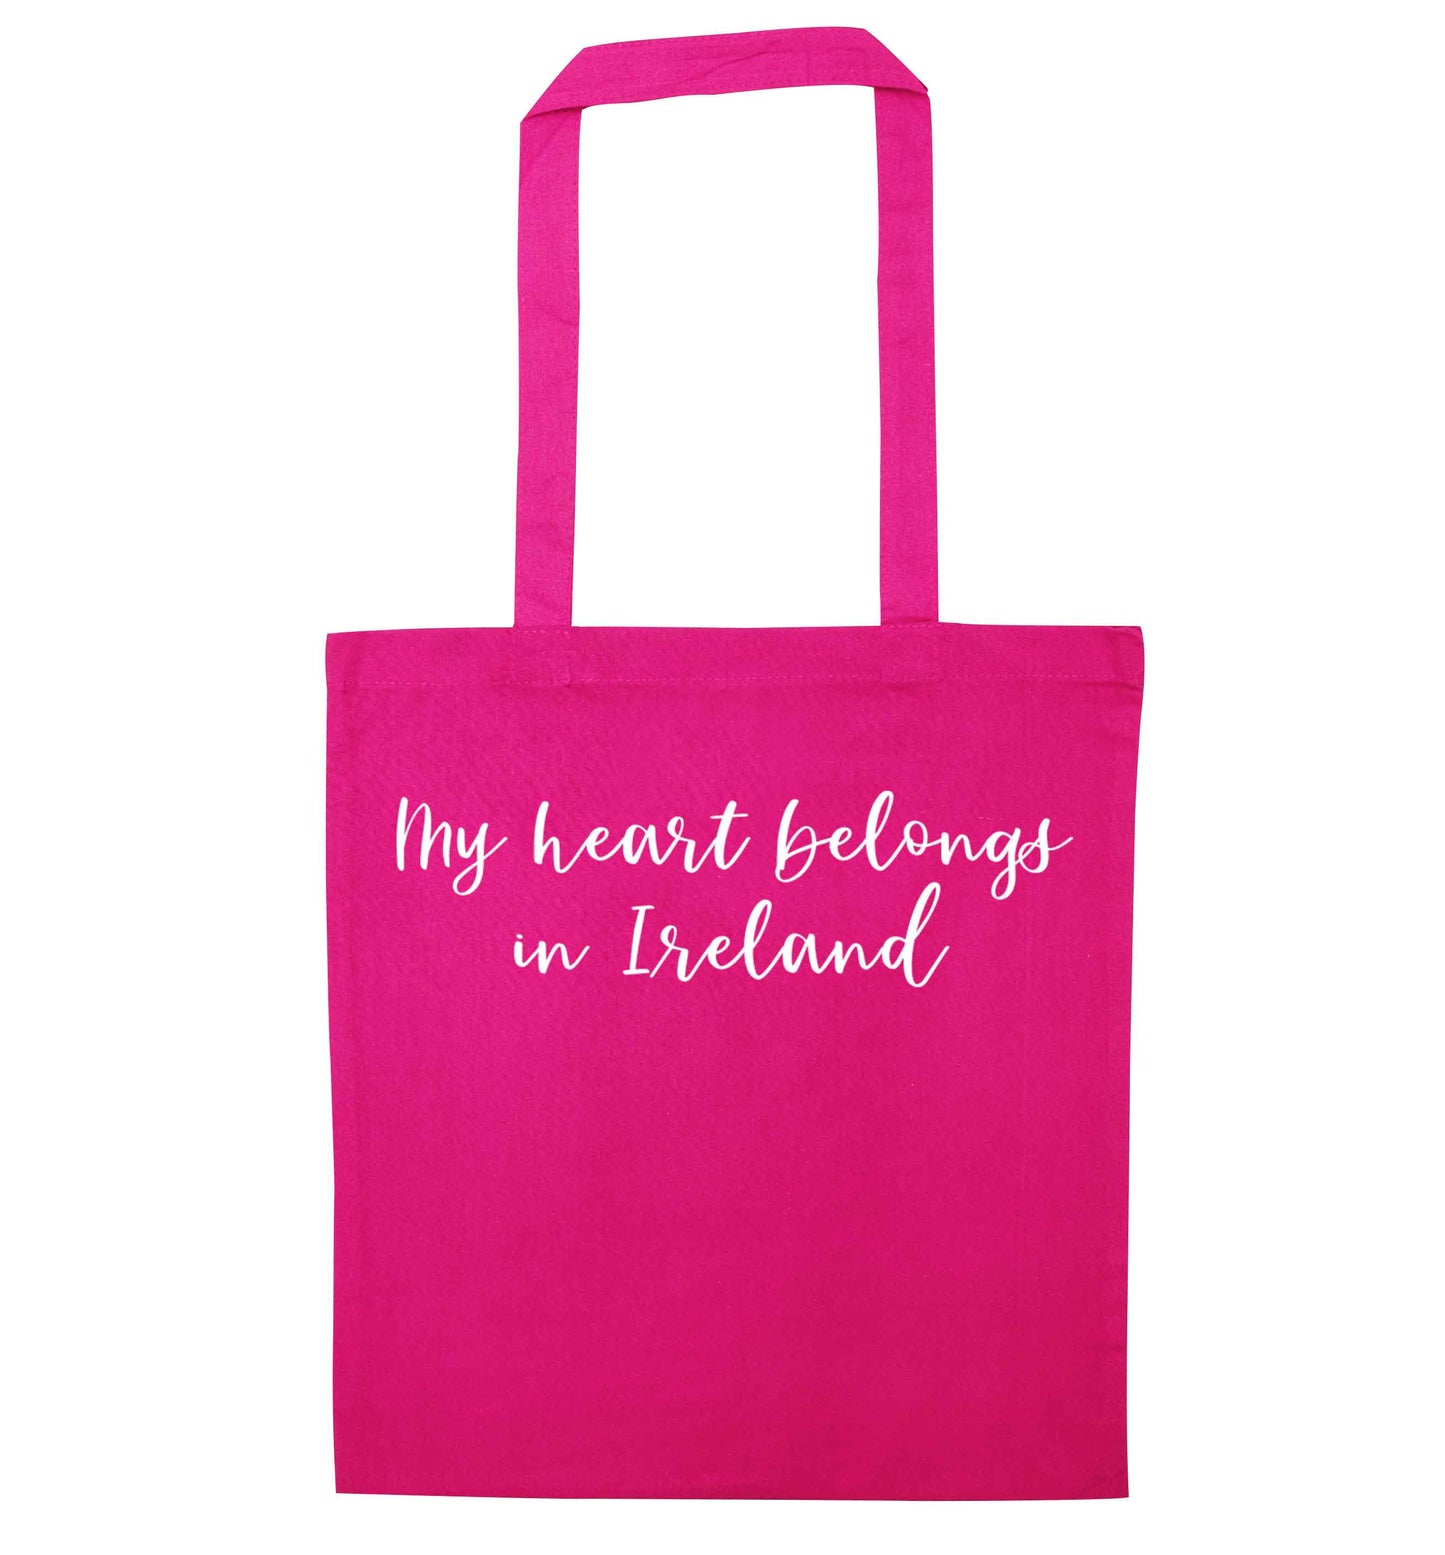 My heart belongs in Ireland pink tote bag